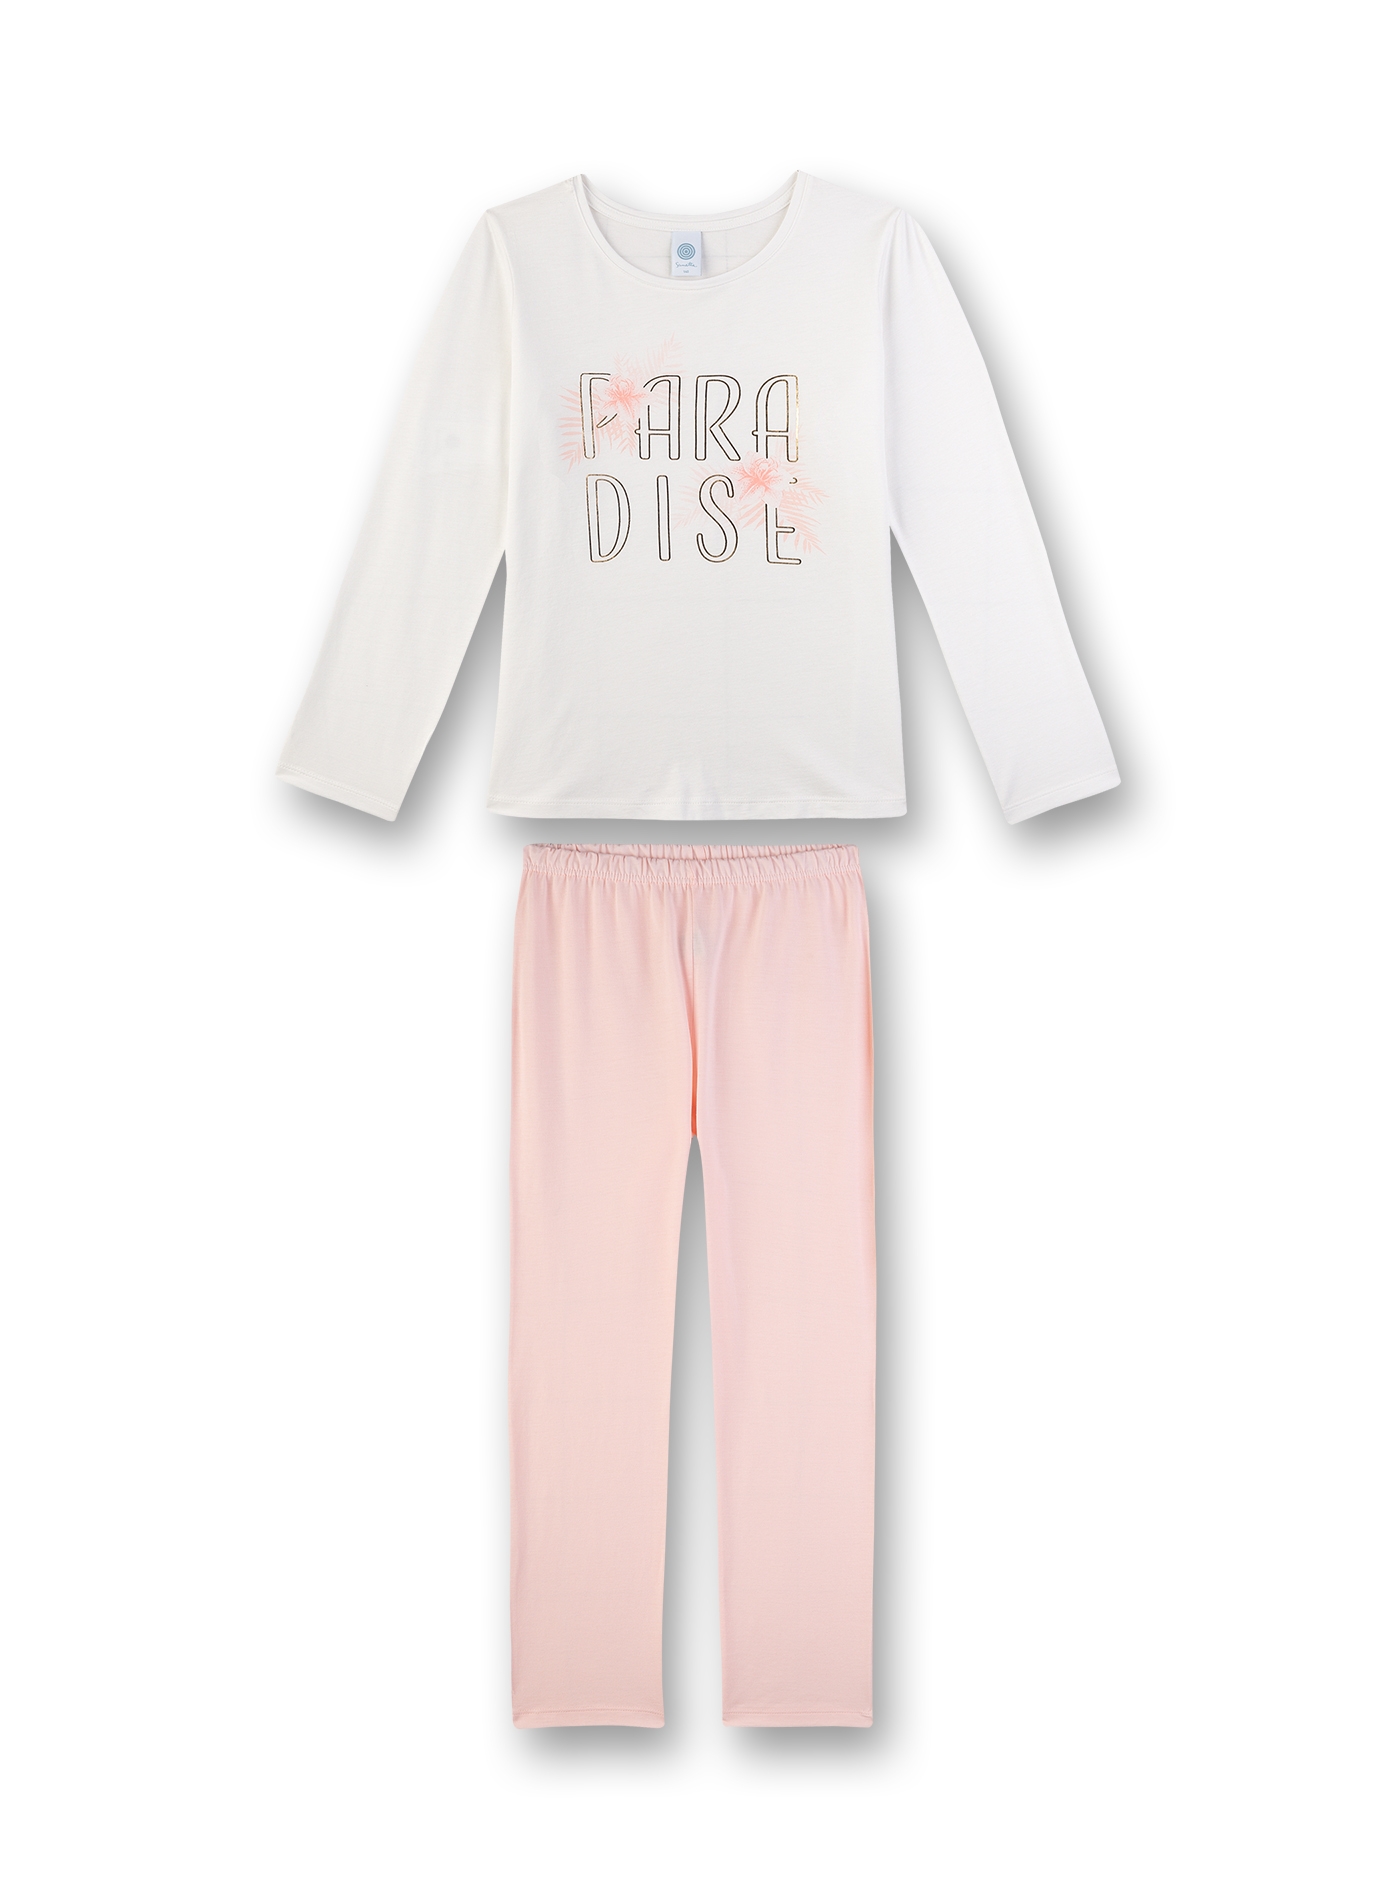 Mädchen-Schlafanzug lang Off-White und Rosa Golden Palms